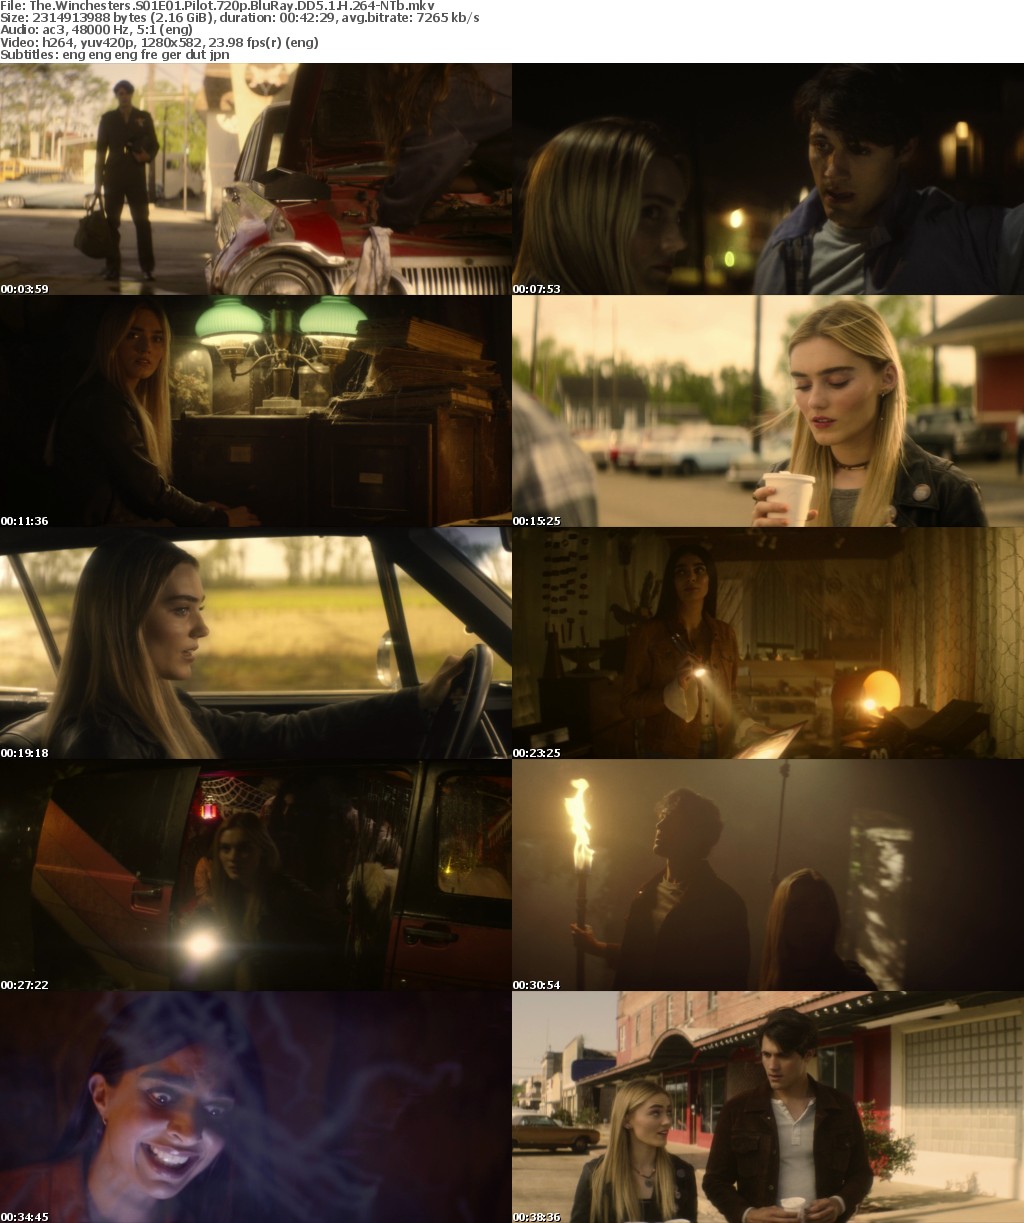 The Winchesters S01E01 Pilot 720p BluRay DD5 1 H 264-NTb